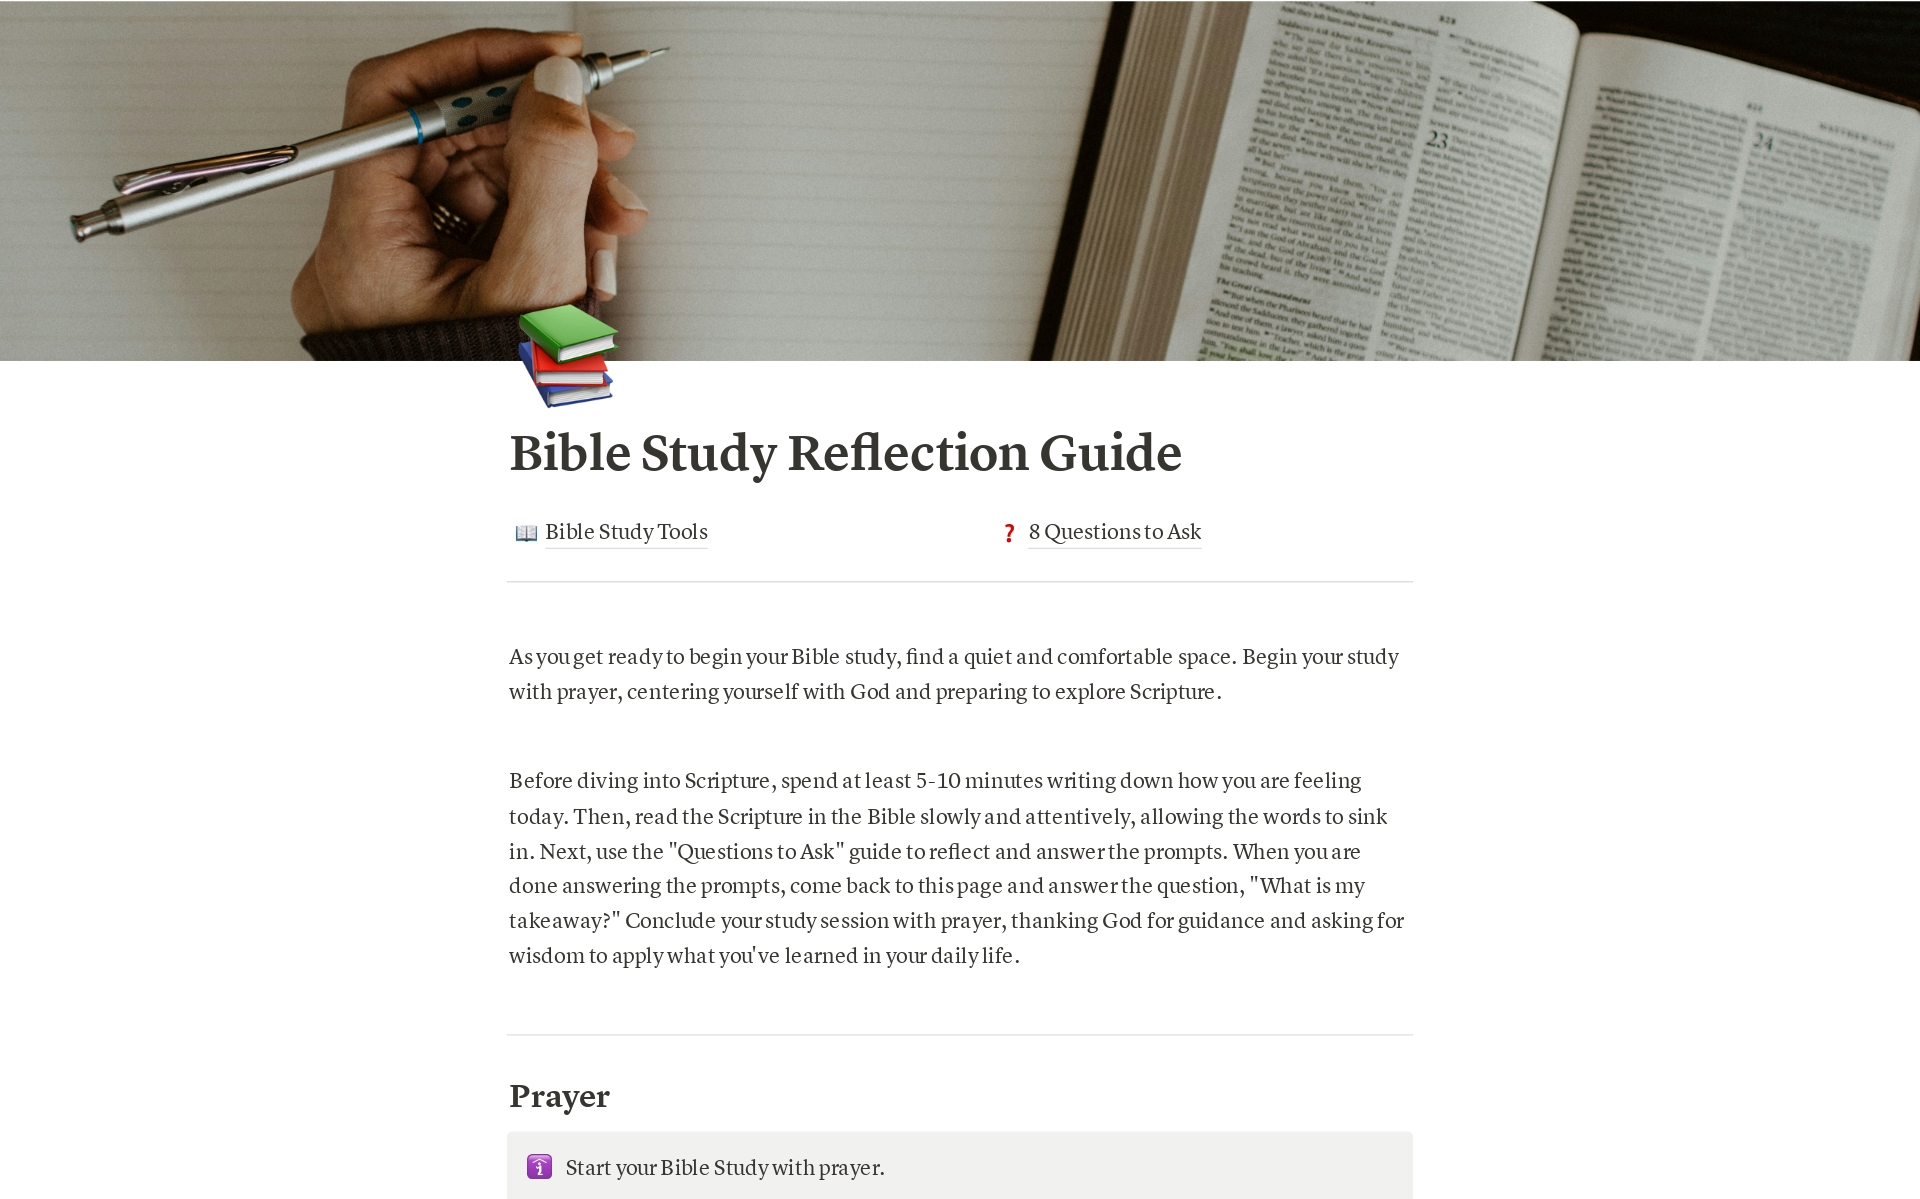 Aperçu du modèle de Bible Study Reflection Guide